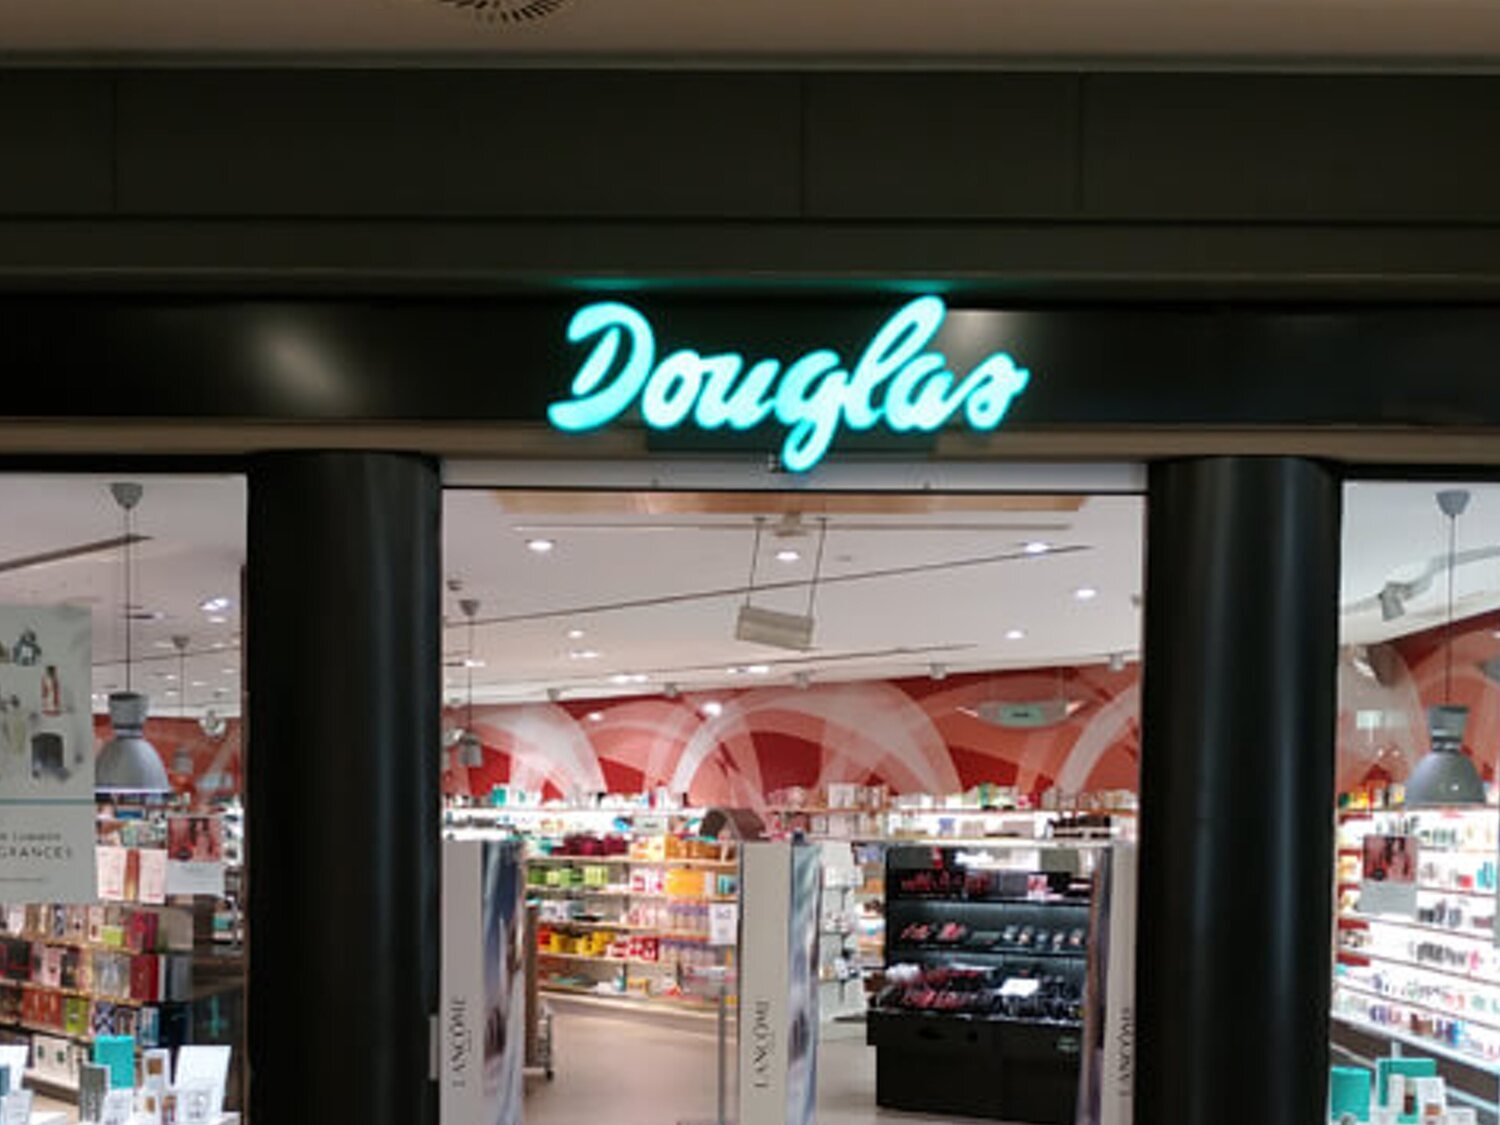 La crisis de Douglas: del auge por toda España a cerrar 7 de cada 10 perfumerías y despedir a casi 1.000 empleados